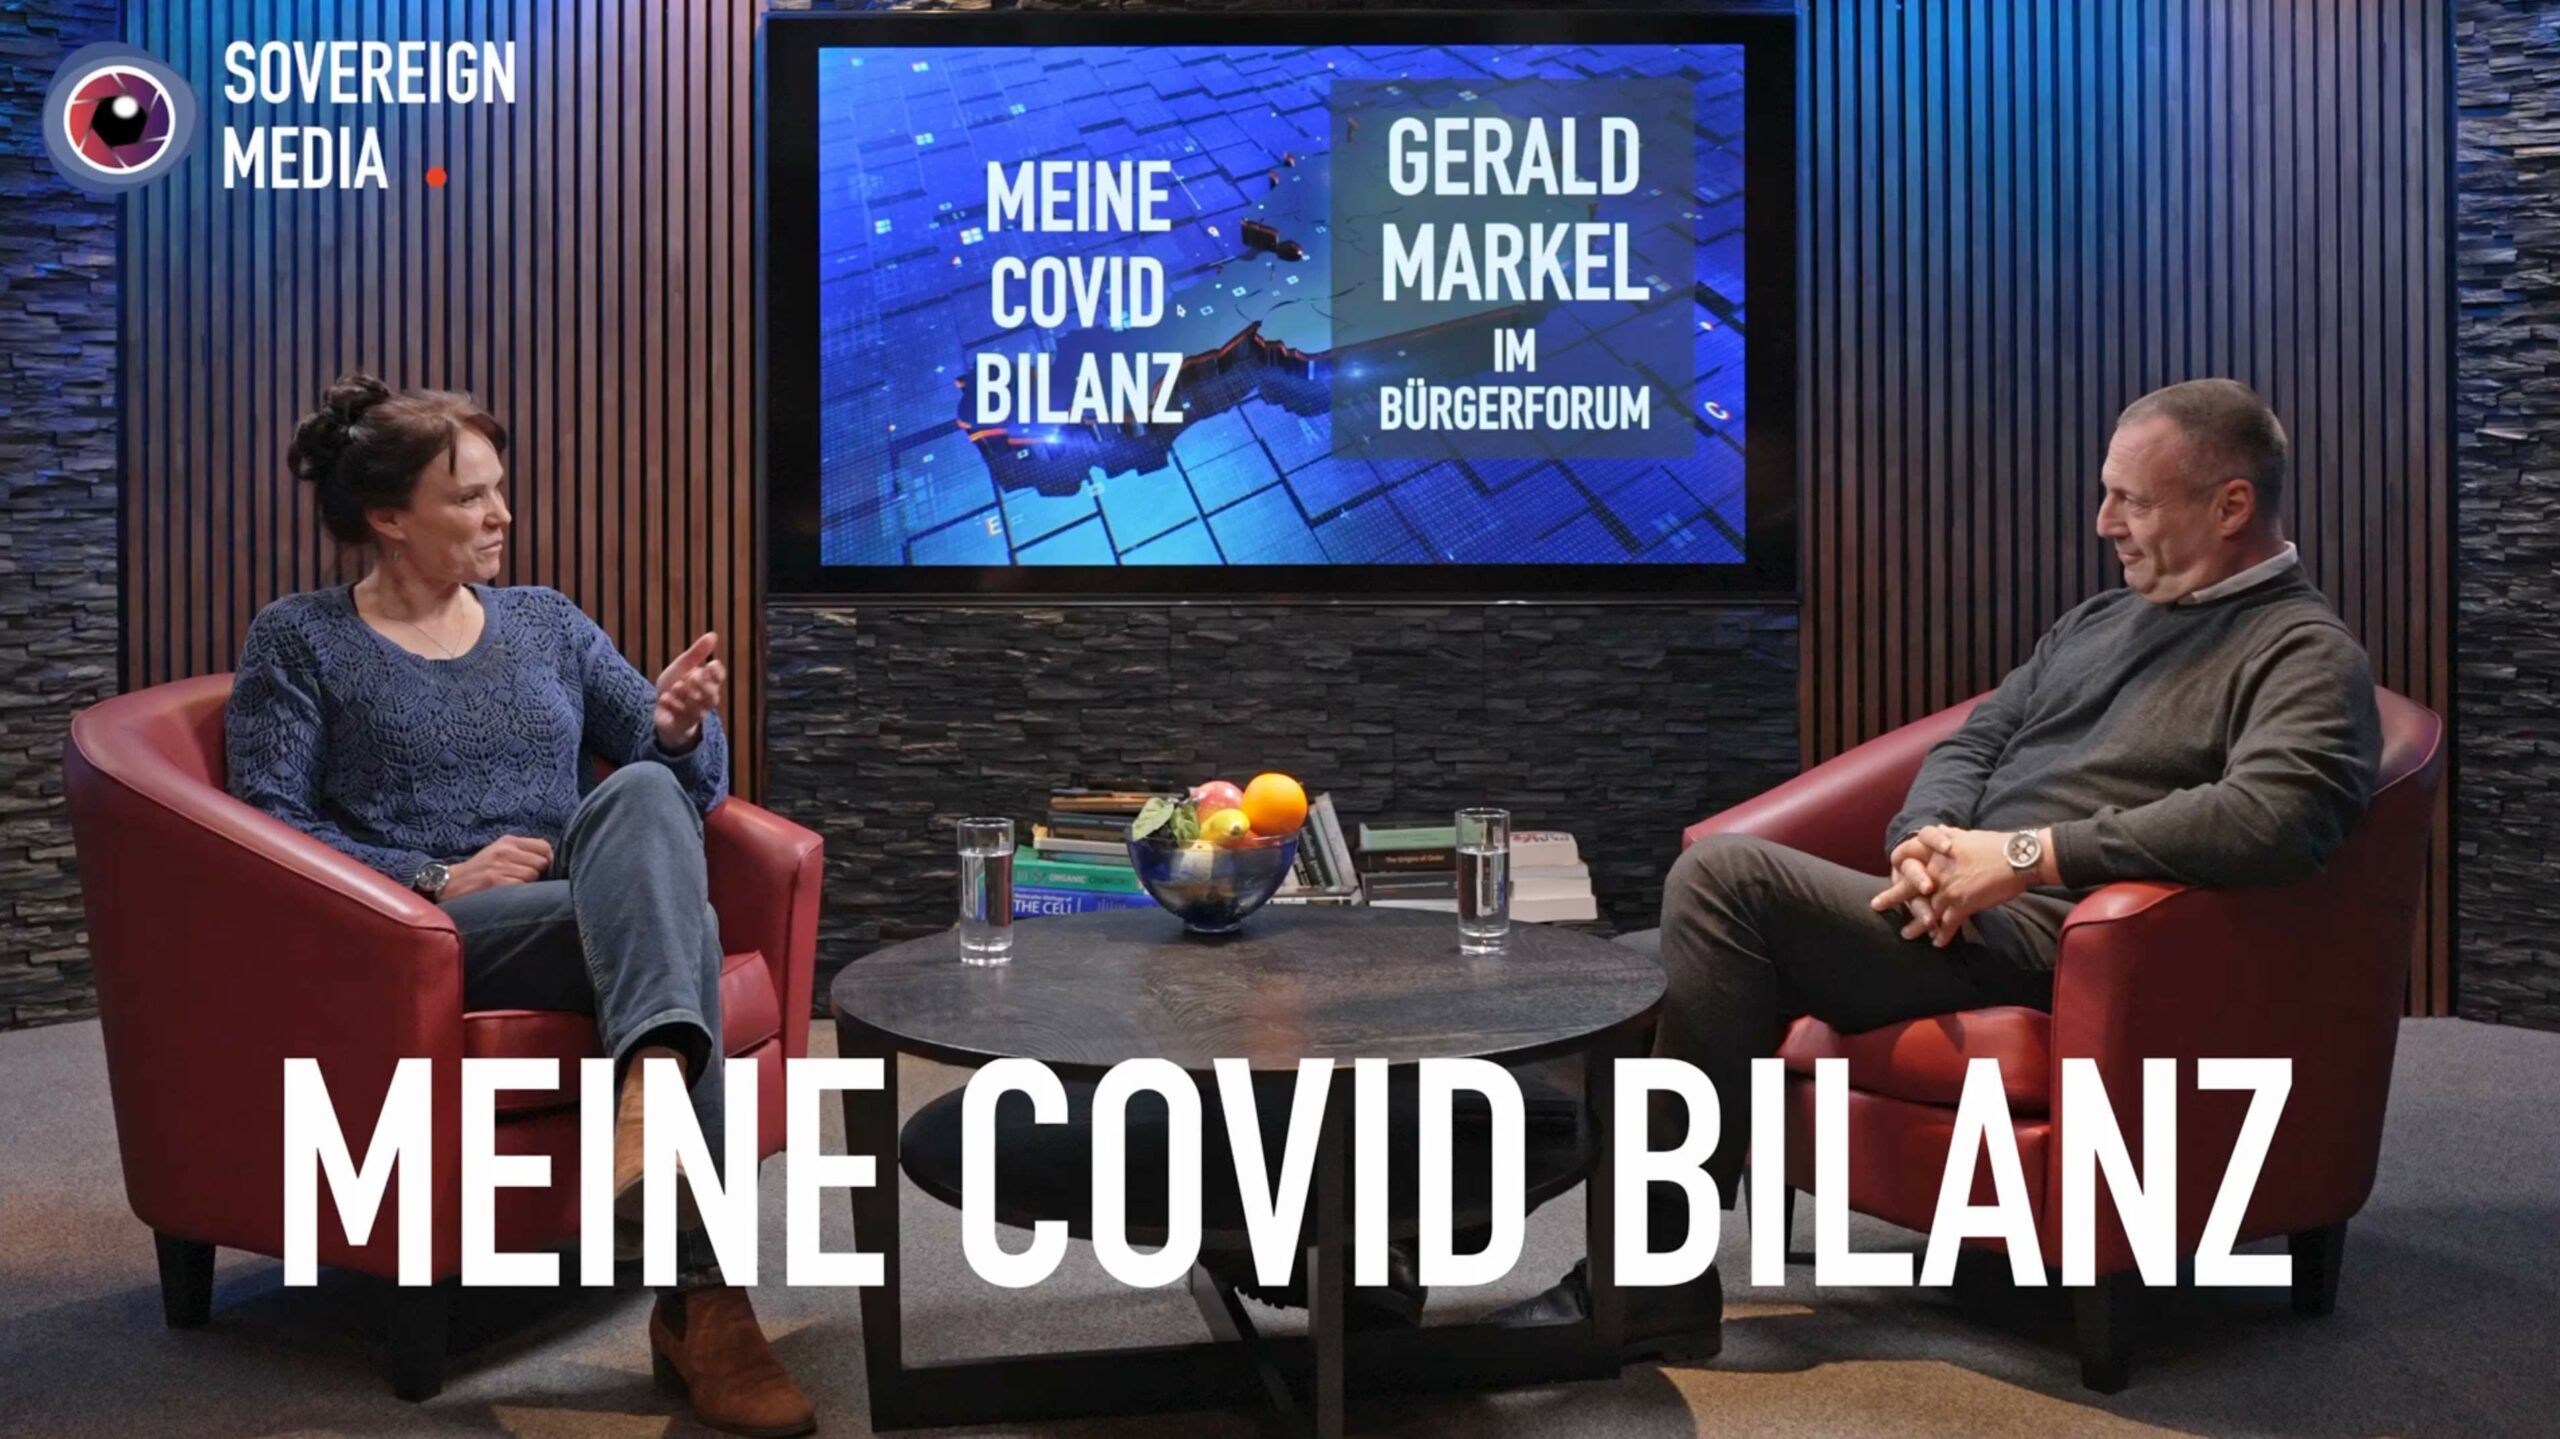 MEINE COVID BILANZ – GERALD MARKEL im Bürgerforum